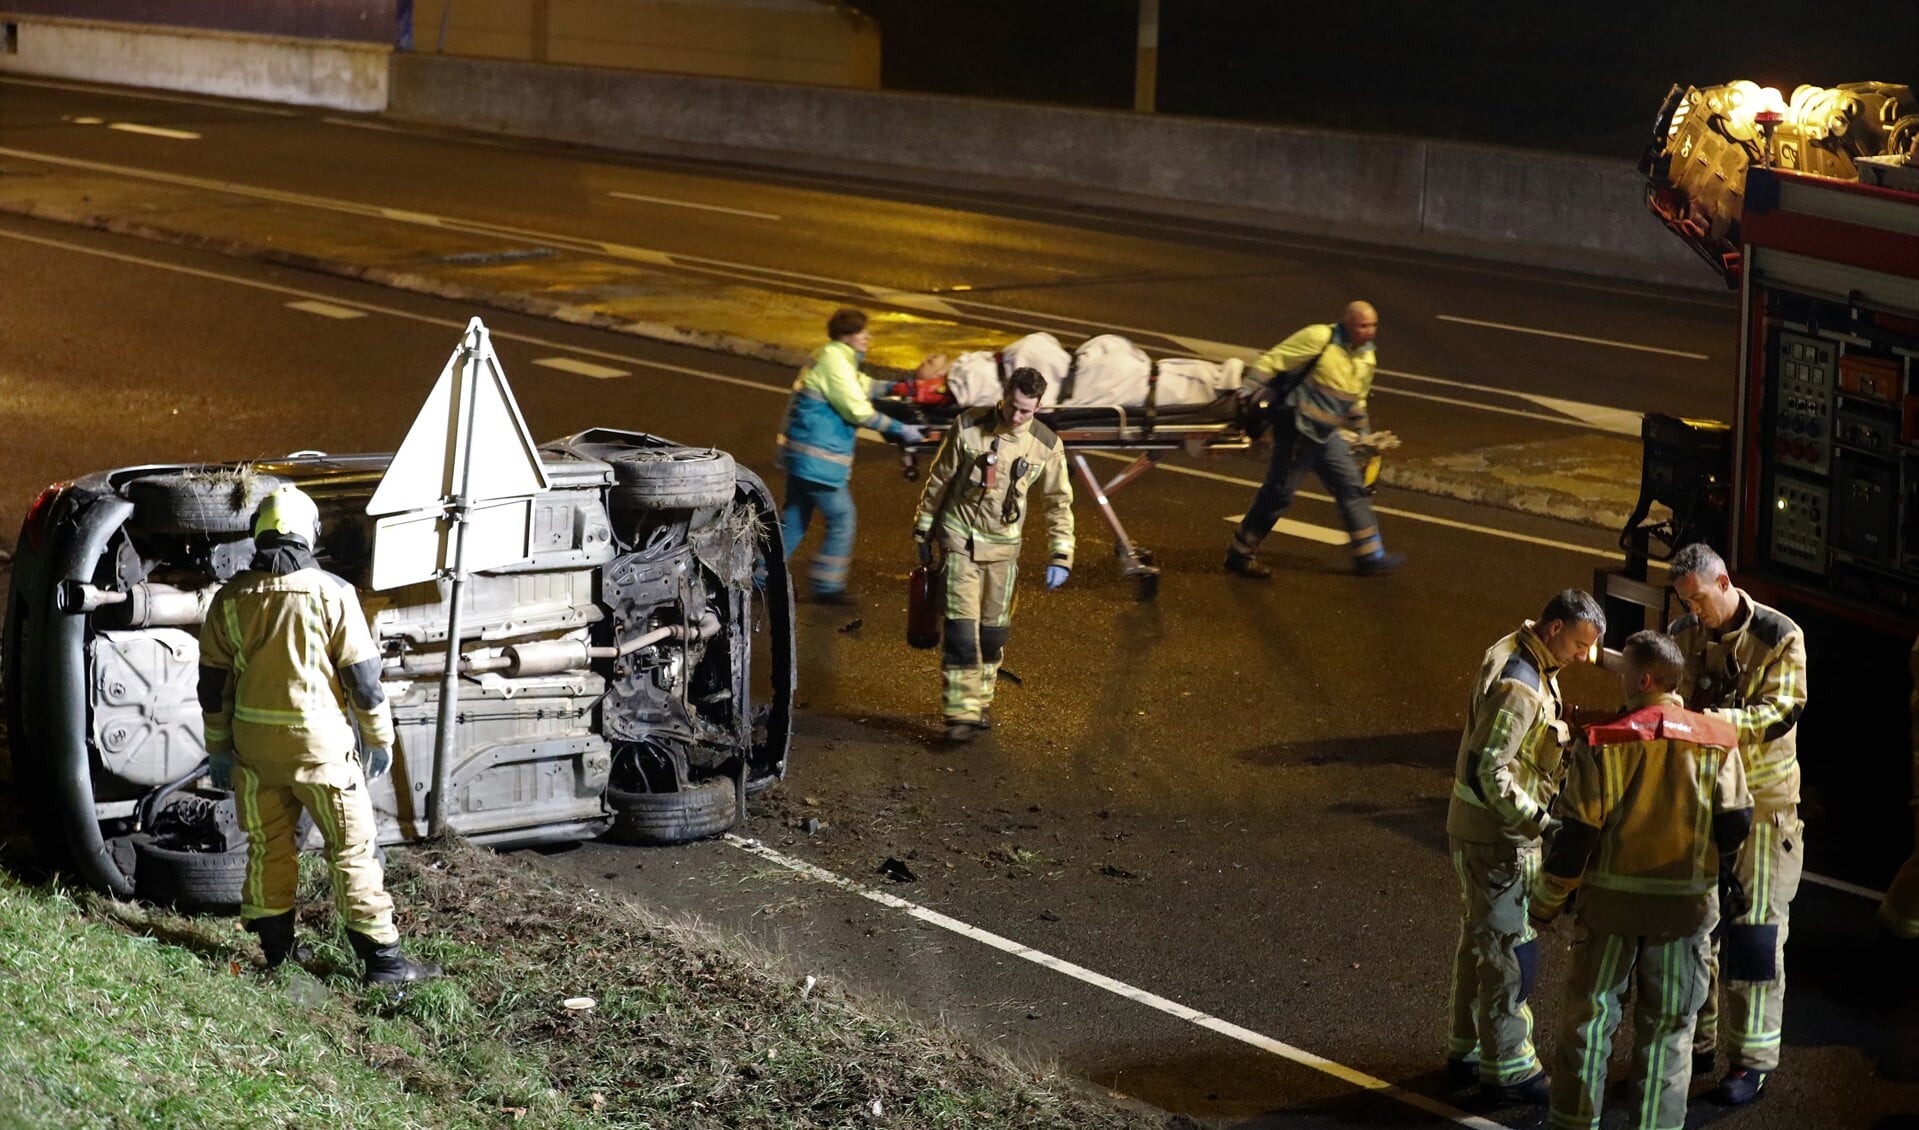 De auto kwam op zijn kant tot stilstand en de twee inzittenden raakten gewond (foto: Rene Hendriks/info: Regio15.nl).